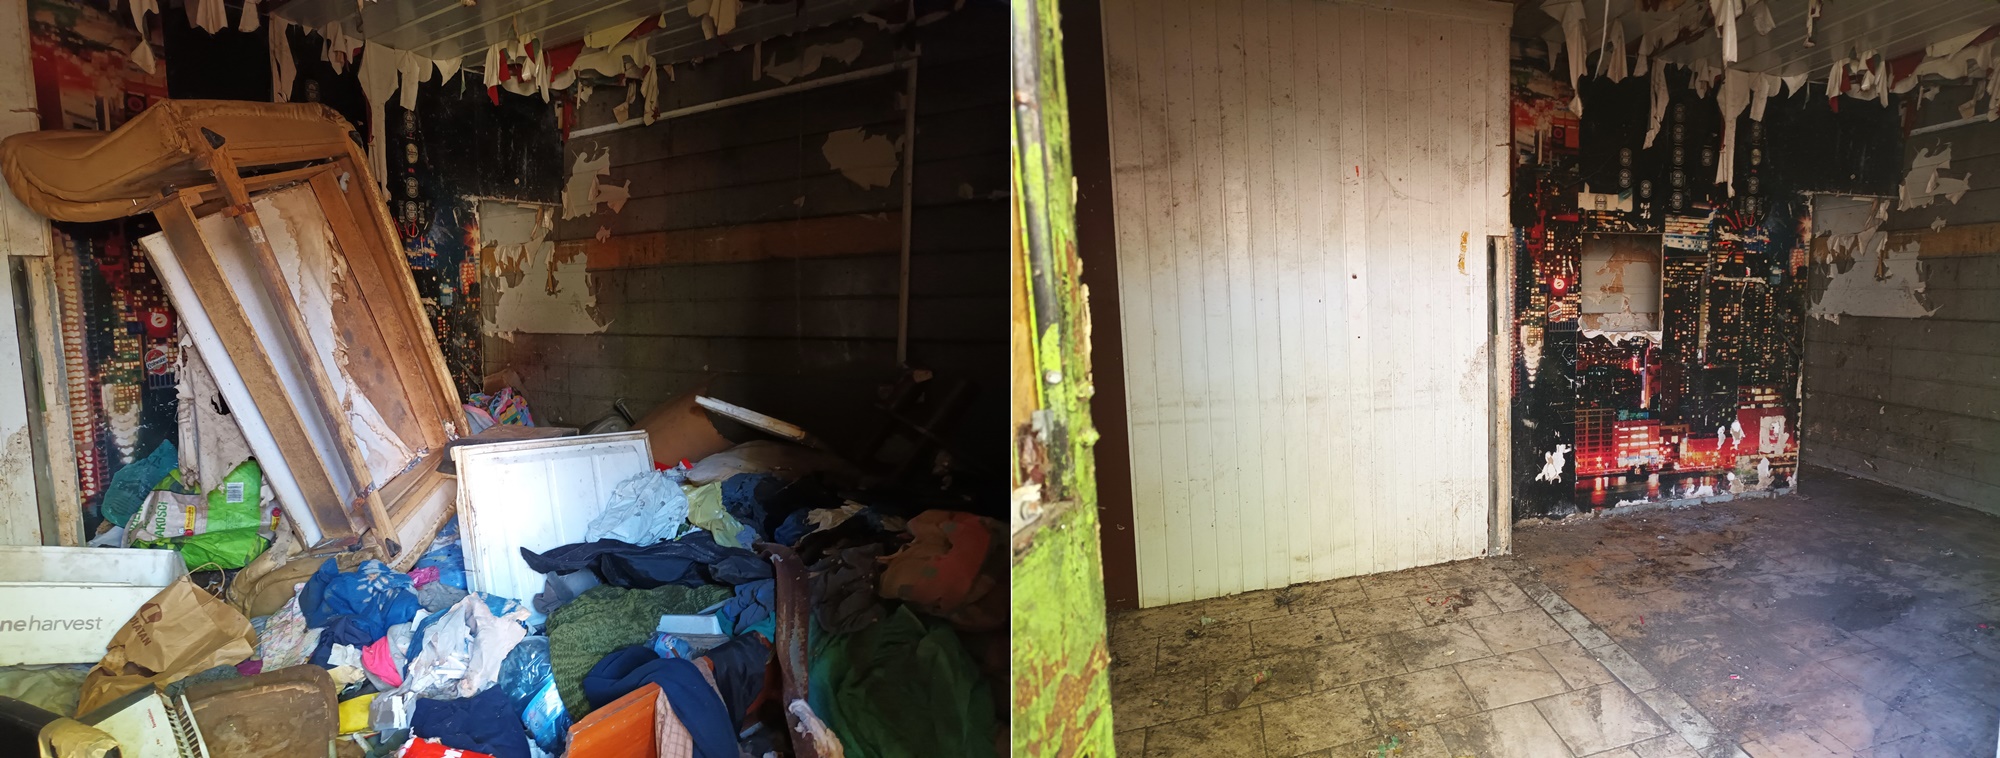 Zestawienie dwóch zdjęć: po lewej zaśmiecone pomieszczenie opuszczonego pawilonu handlowego, po prawej to samo pomieszczenie już oczyszczone